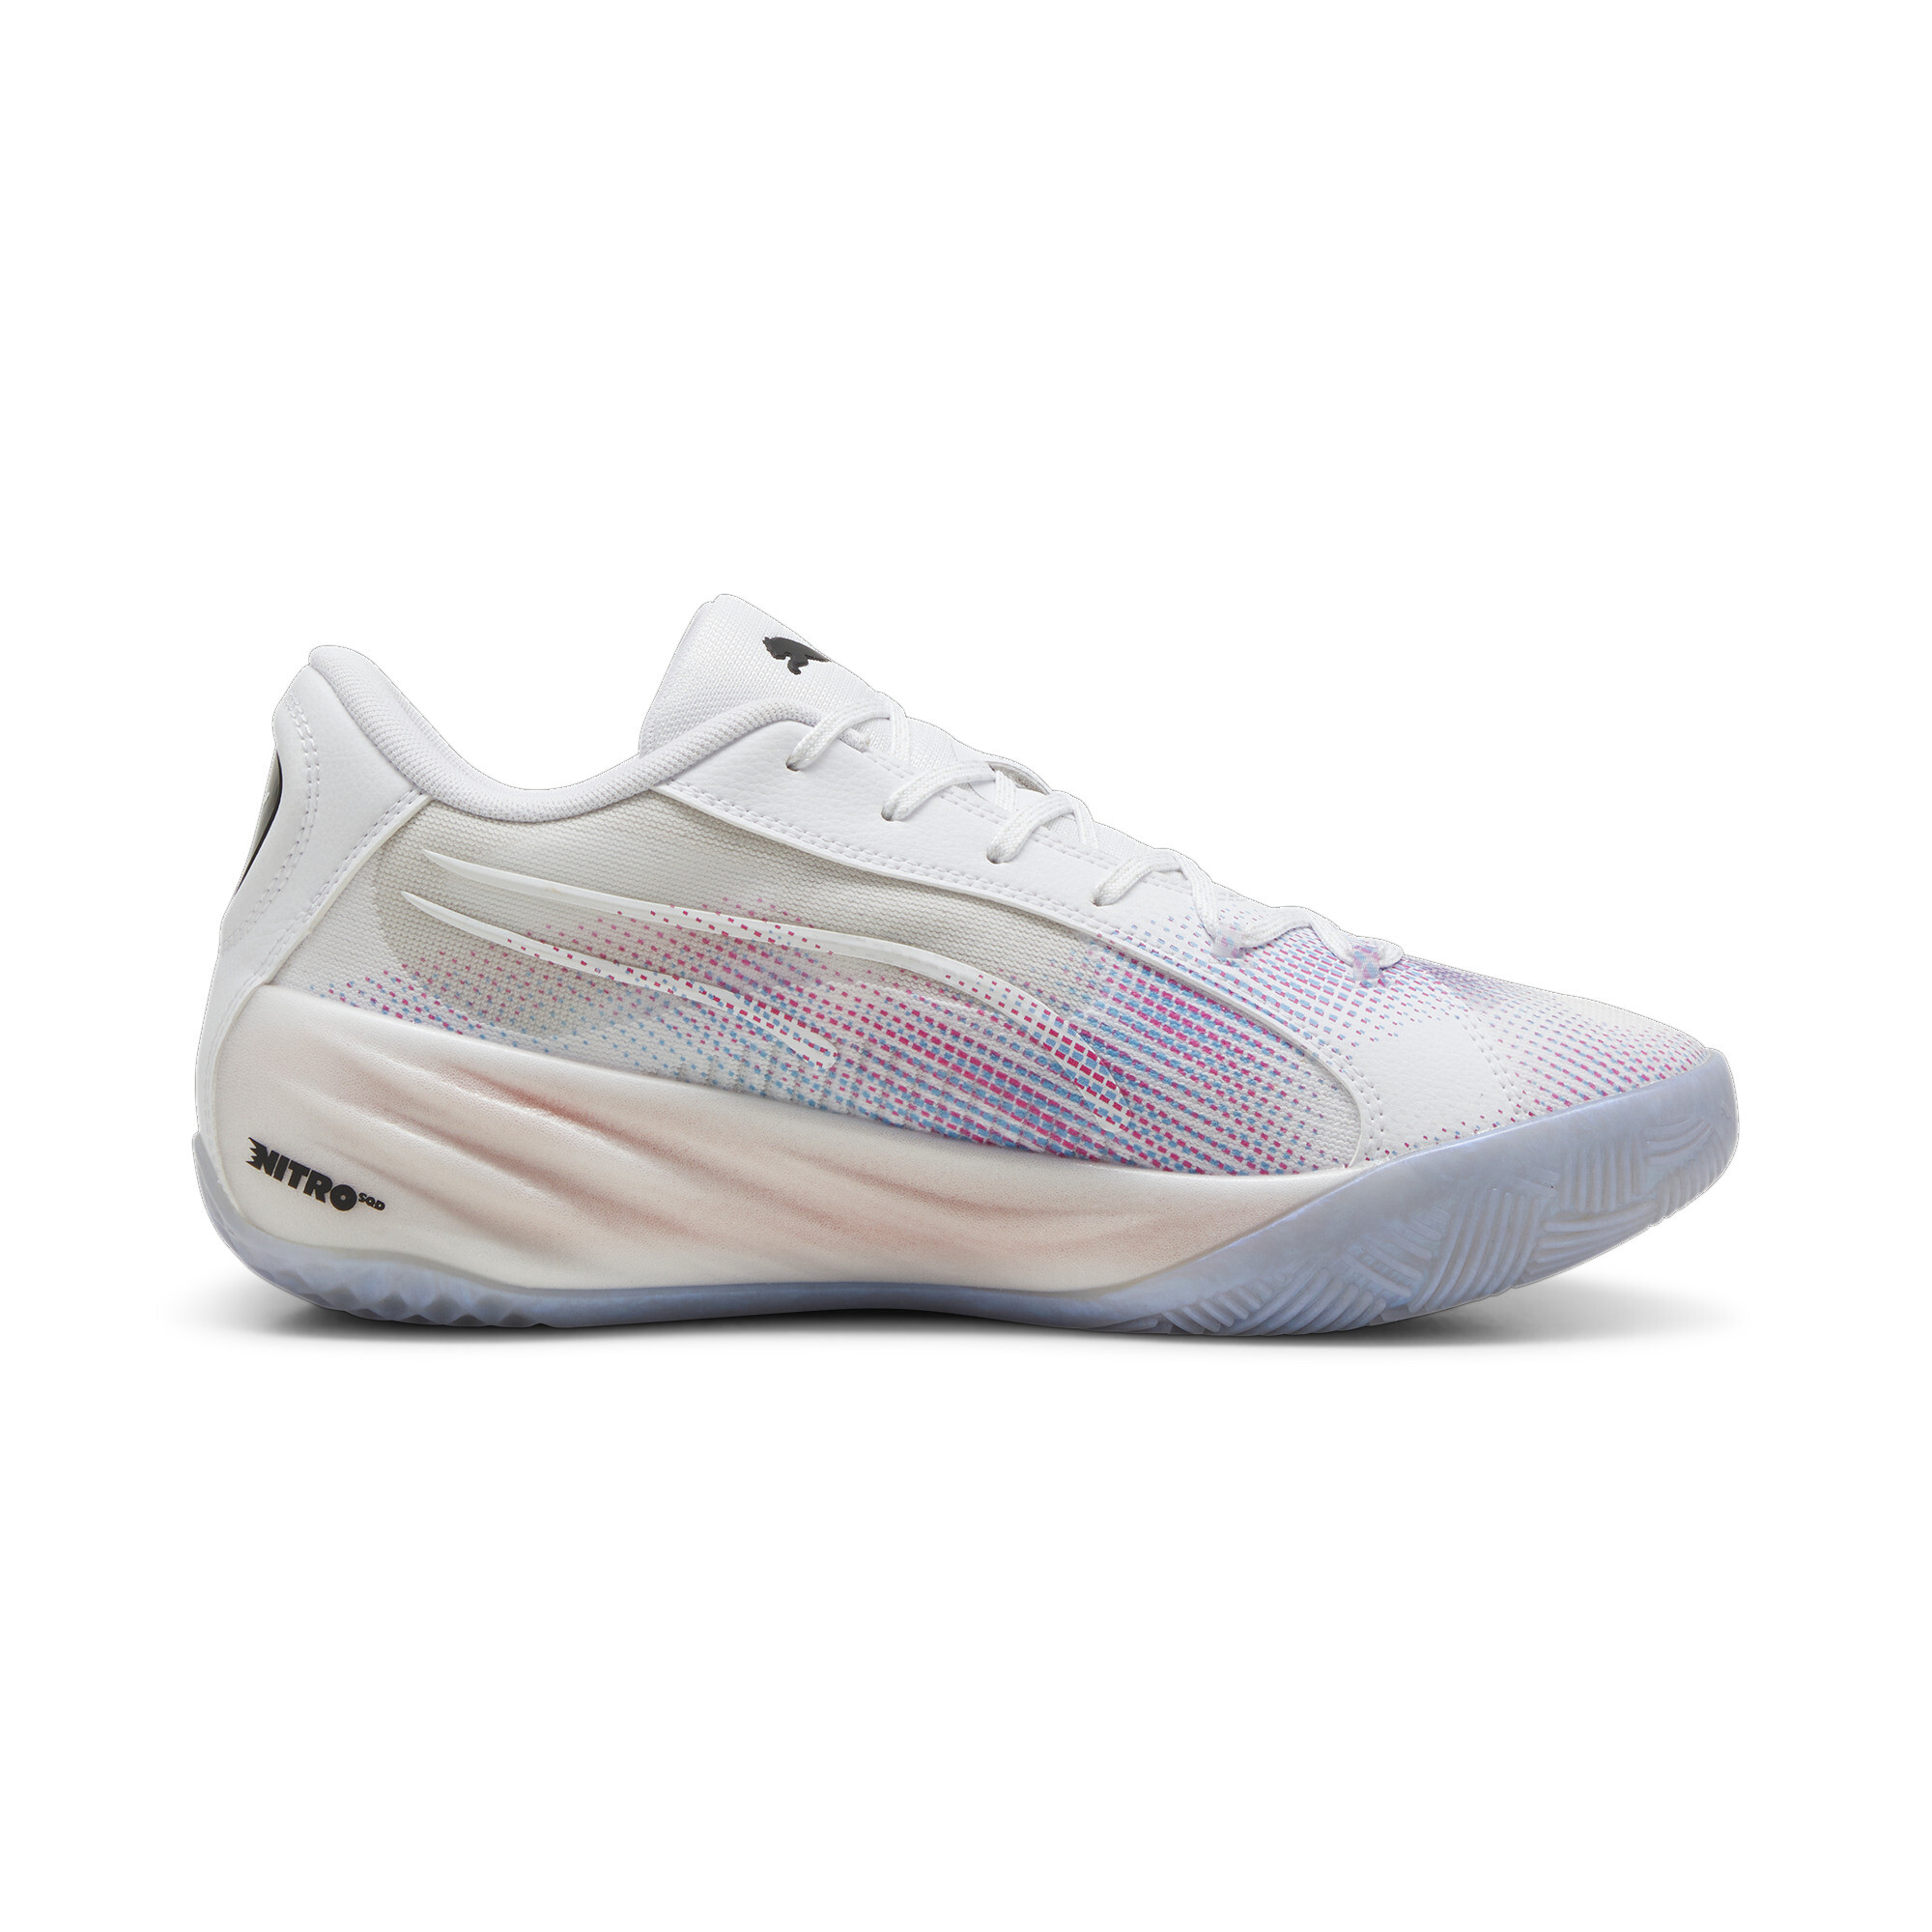 Puma All-Pro NITROâ¢ Basketball Shoes, White, Size 53.5, Shoes